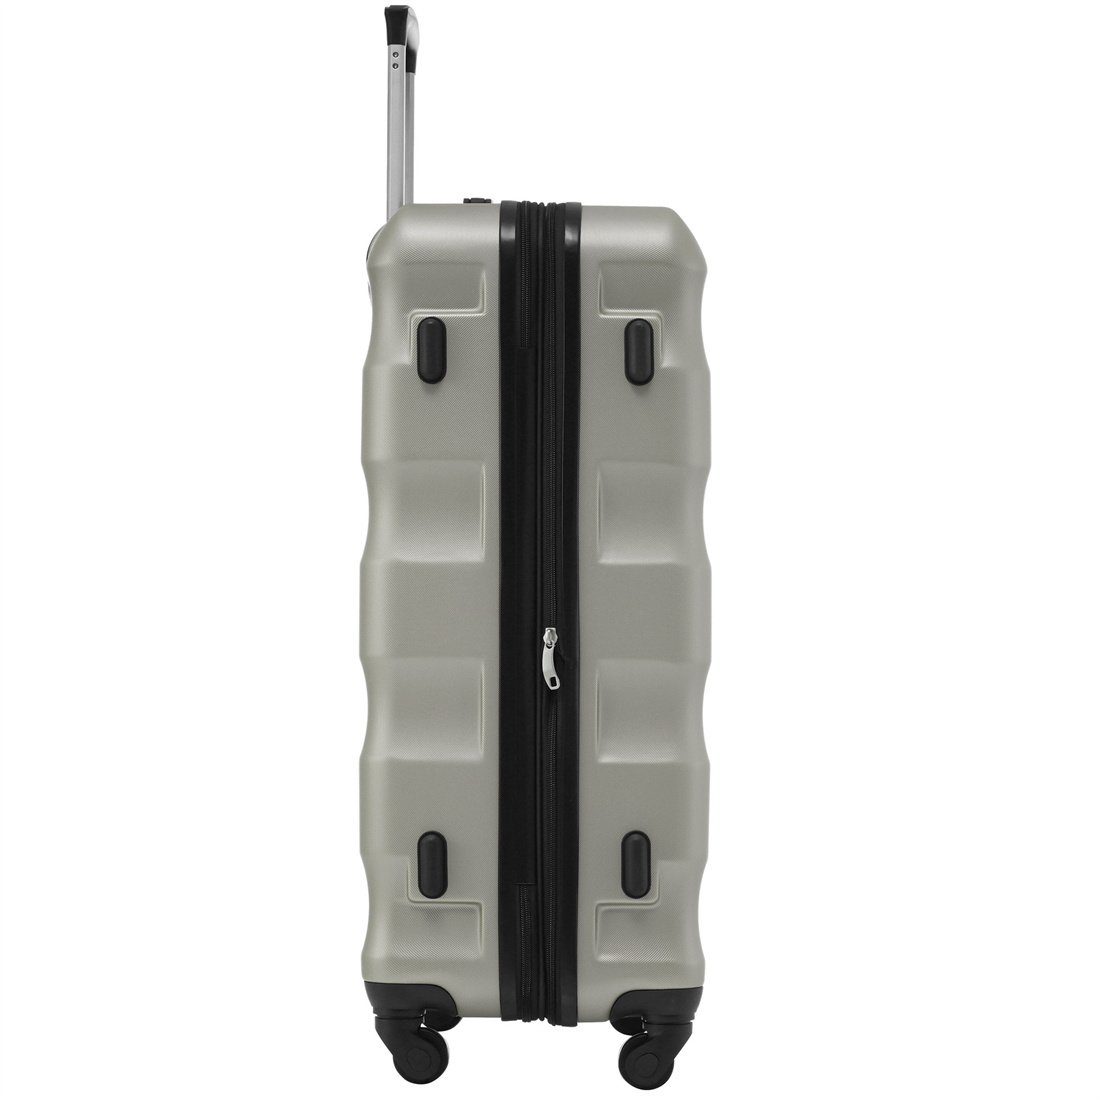 Koffer Hartschalen-Koffer, 69*44.5*26.5cm, Goldgrün DÖRÖY Reisekoffer, ABS-Material